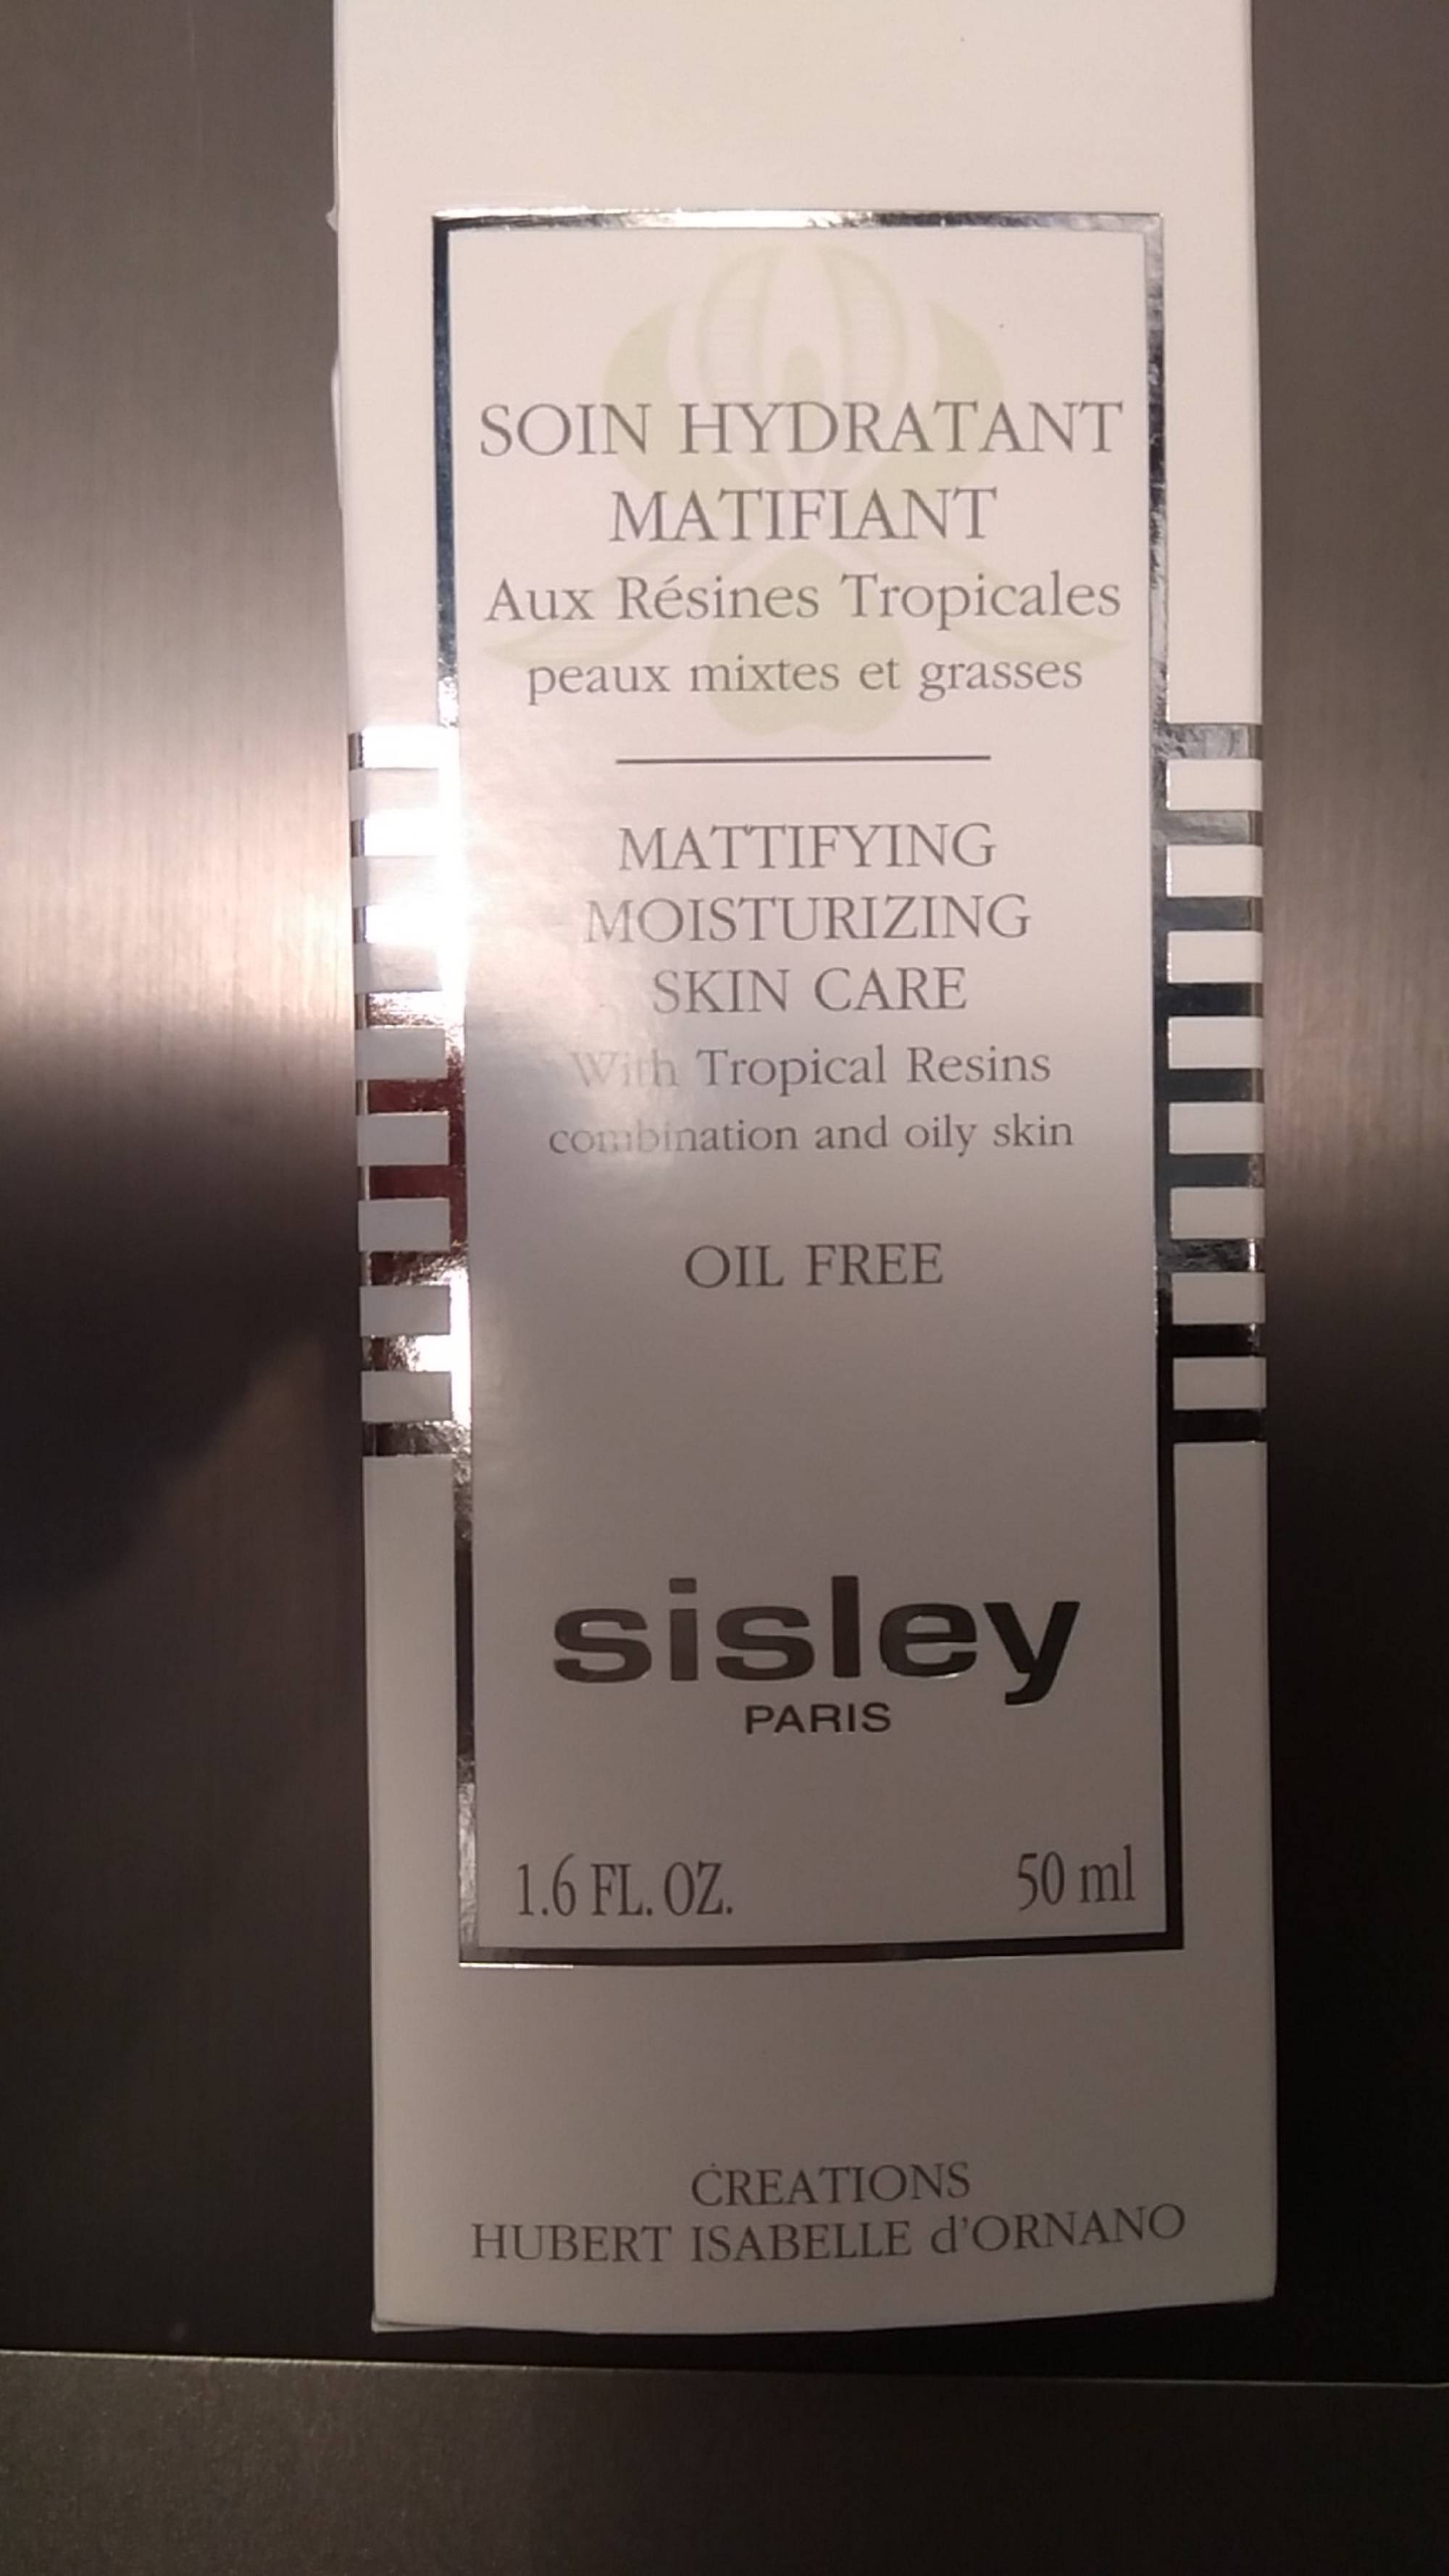 SISLEY - Soin hydratant matifiant aux résines tropicales 